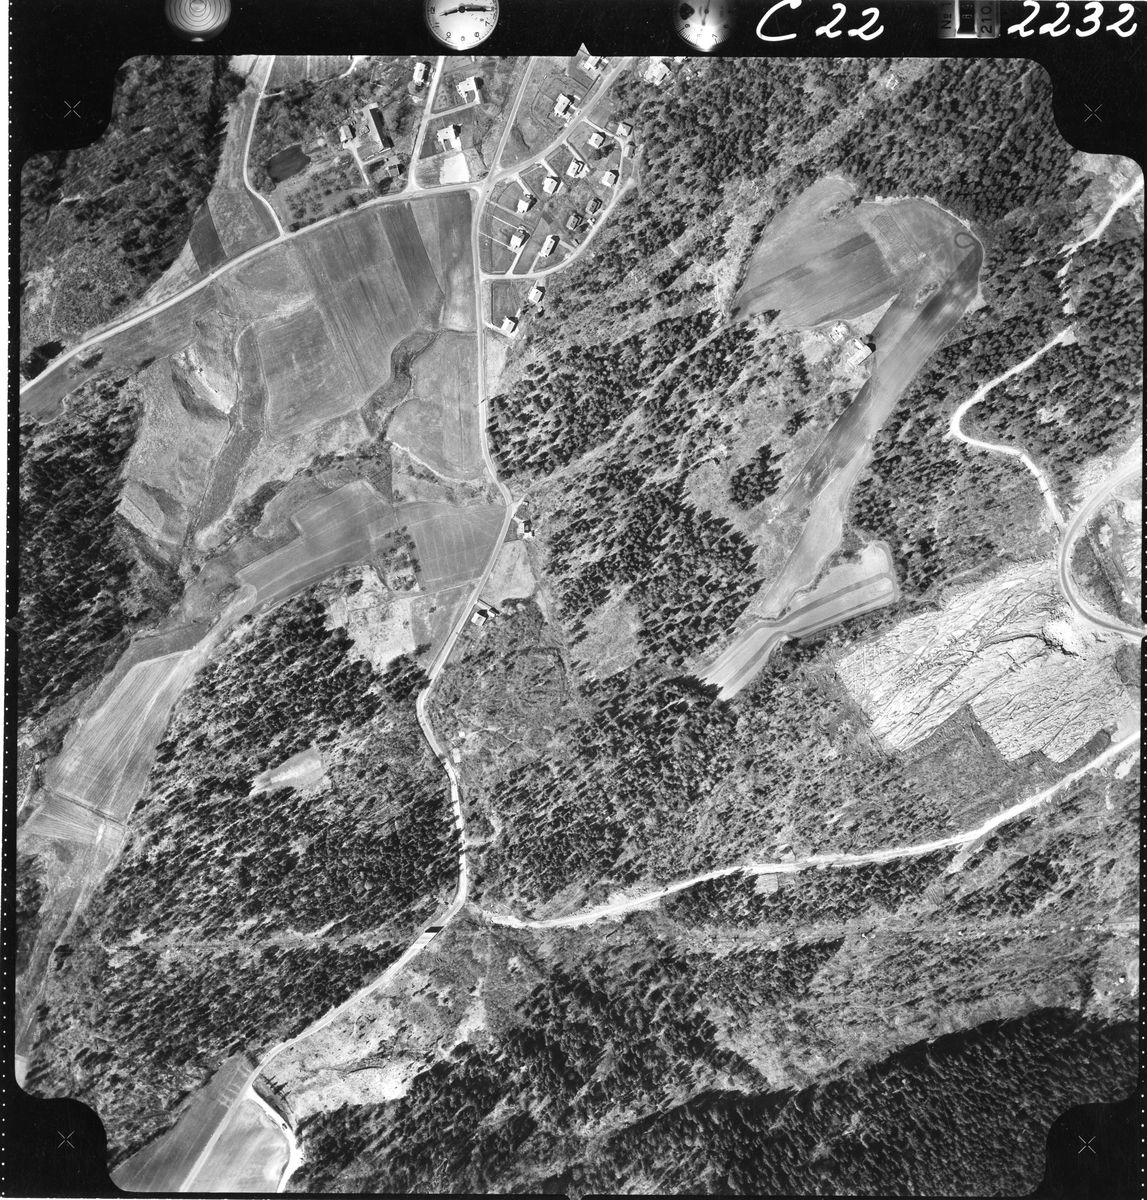 Flyfotoarkiv fra Fjellanger Widerøe AS, fra Porsgrunn Kommune, Tveten- Flåtten-Bjørntvedt, Eidangerhalvøya. Fotografert 16/05-1962. Oppdrag nr 2232, C22